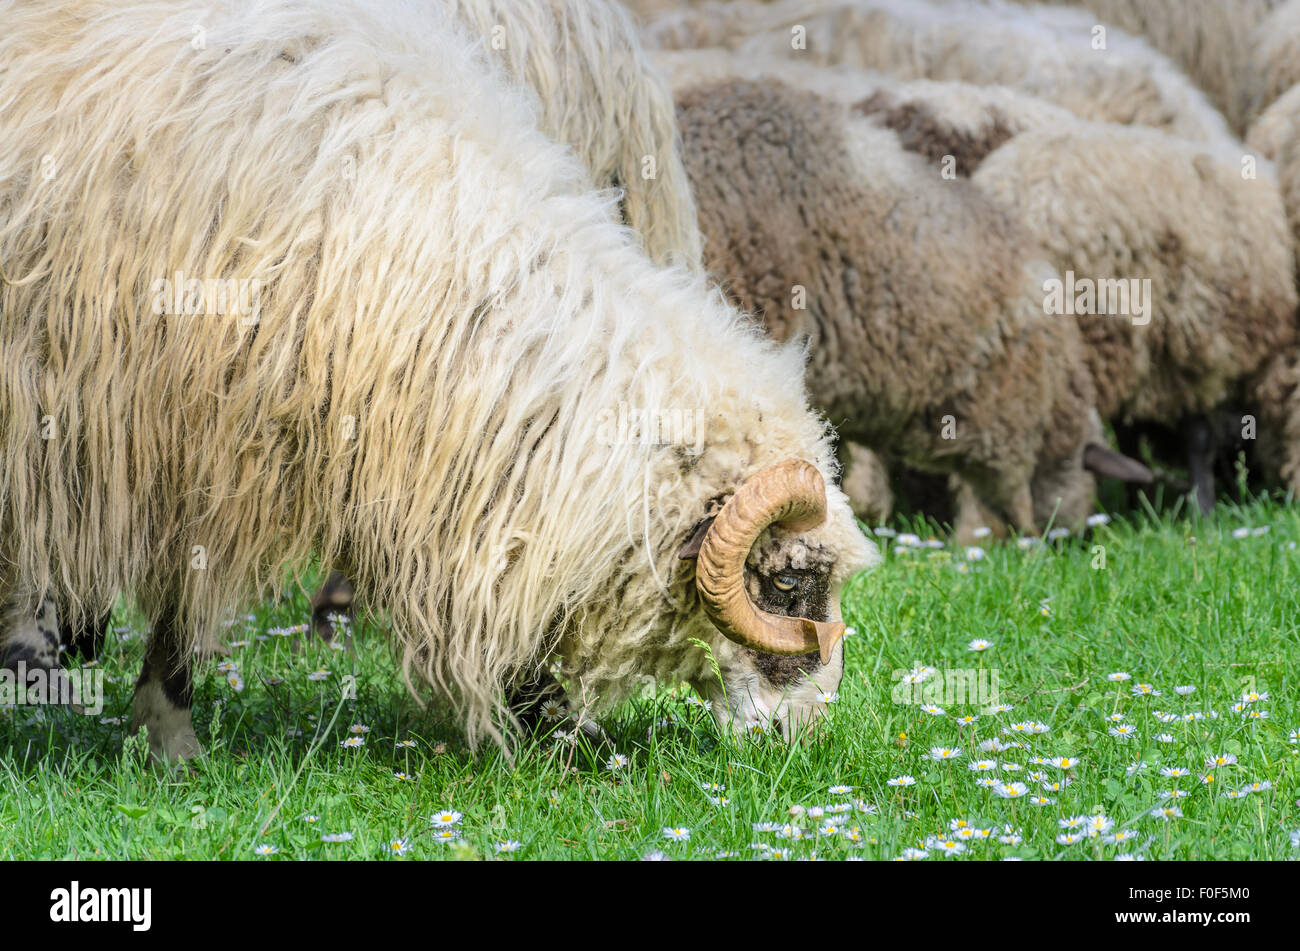 Ram antigua con su rebaño de ovejas pastando en el prado, en la primavera, cuando las primeras flores aparecen desde el césped. Ovejas tipo pramenka. Foto de stock